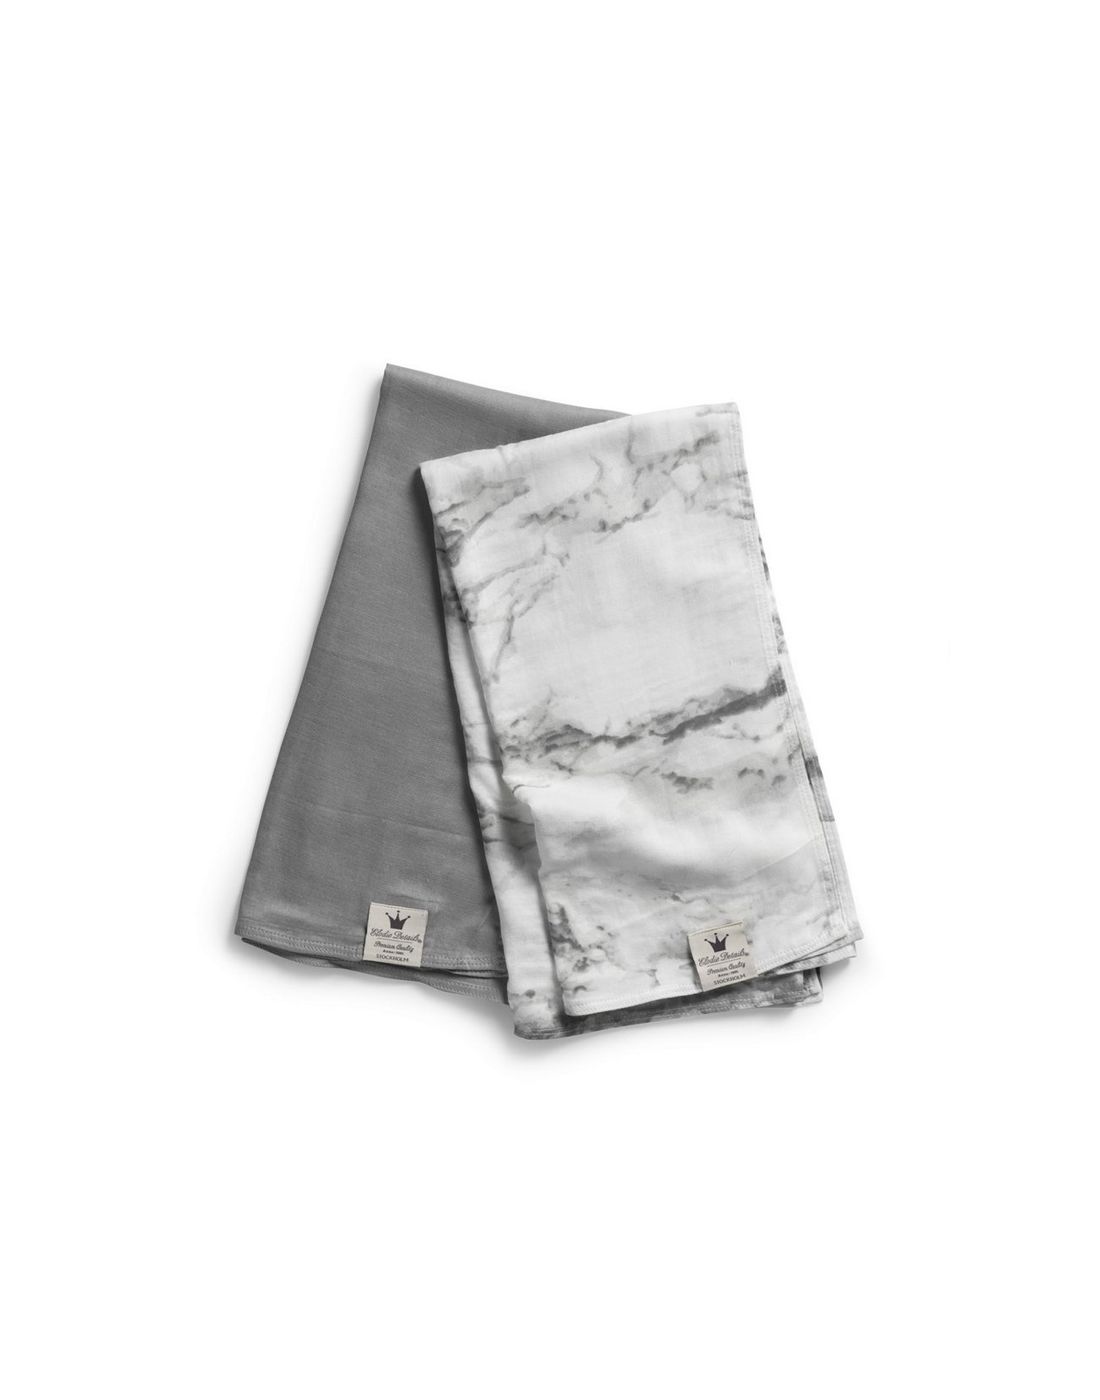 Elodie Details  Baby Blanket Marble Grey